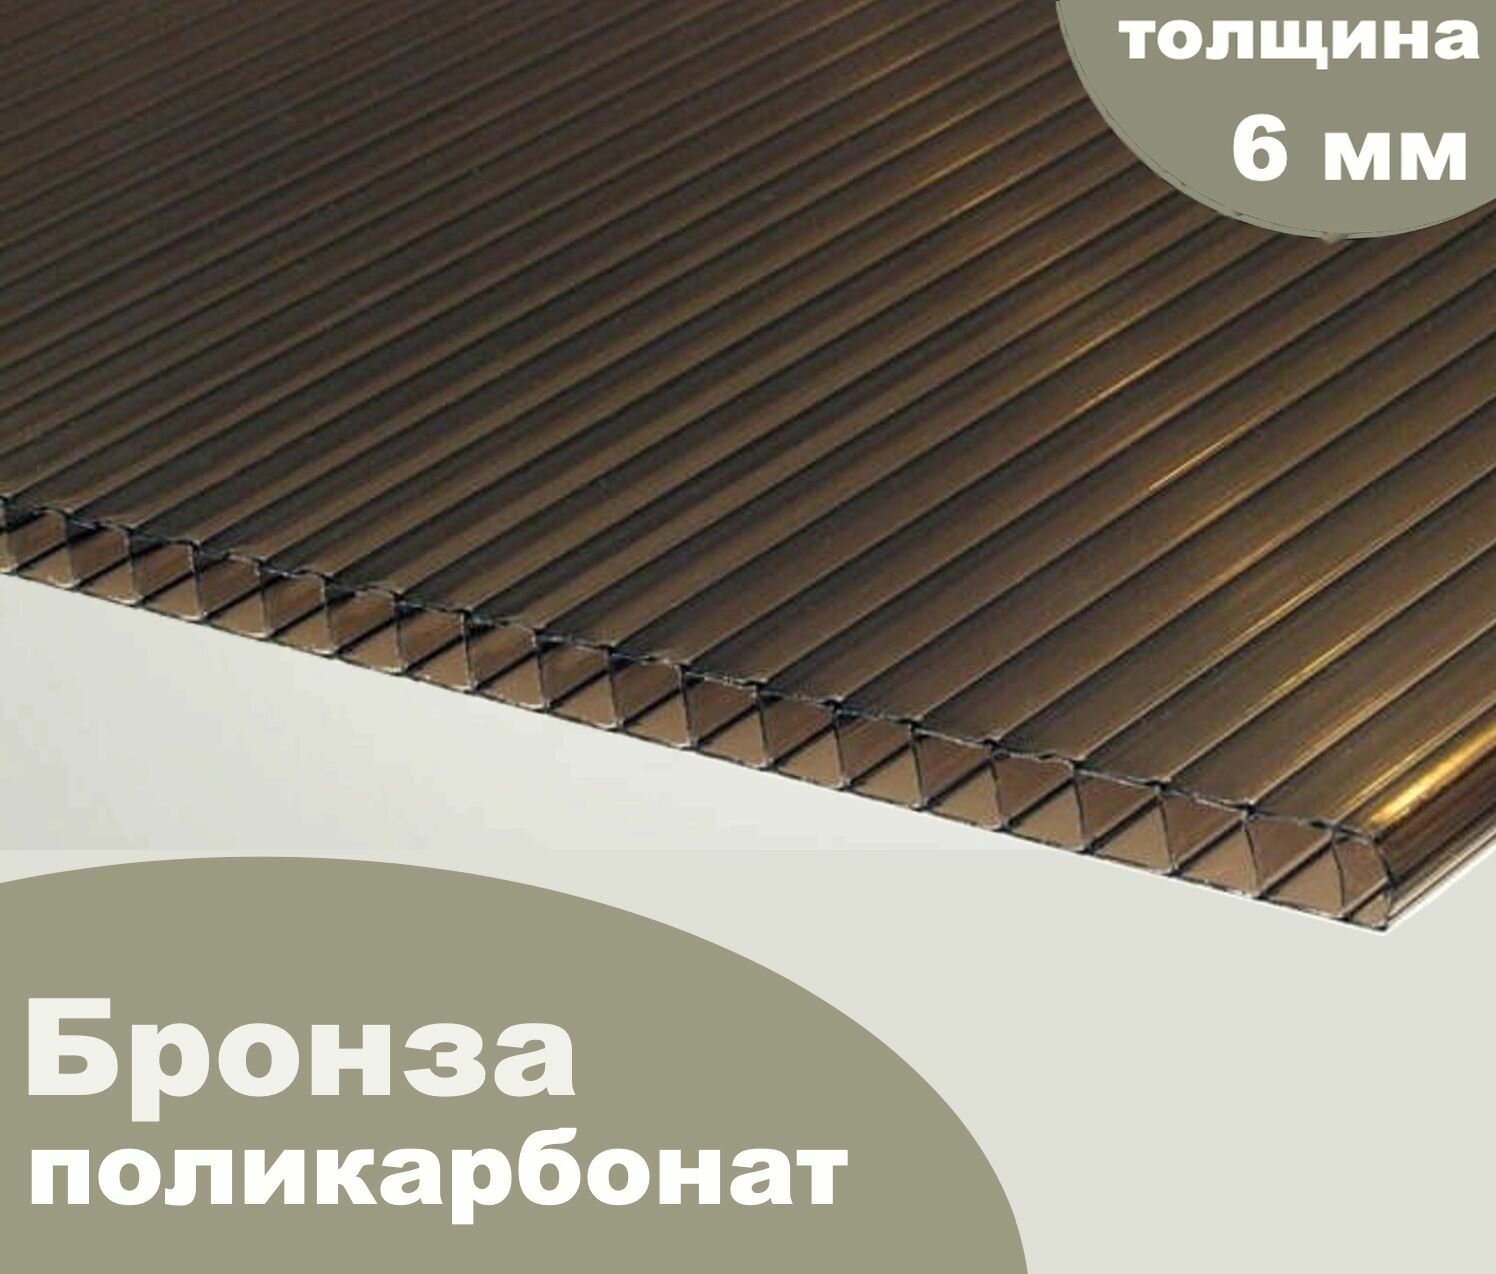 Сотовый поликарбонат бронза, Ultramarin, 6 мм, 12 метров, 2 листа